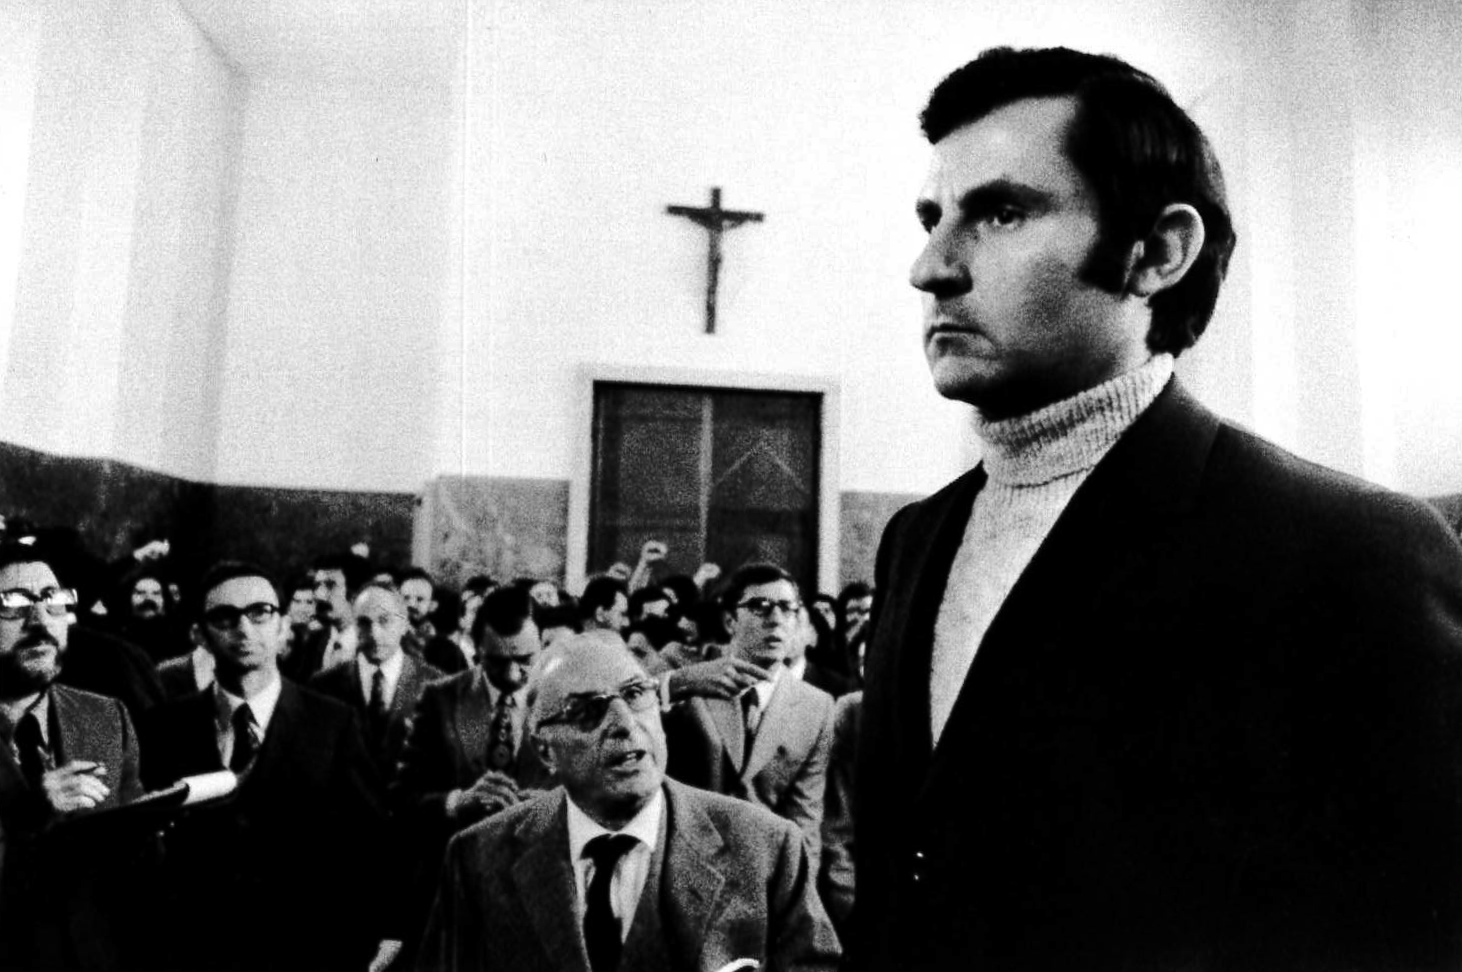   Il commissario Calabresi durante il processo “Calabresi - Lotta Continua”, Palazzo di Giustizia. Milano, 1970.  